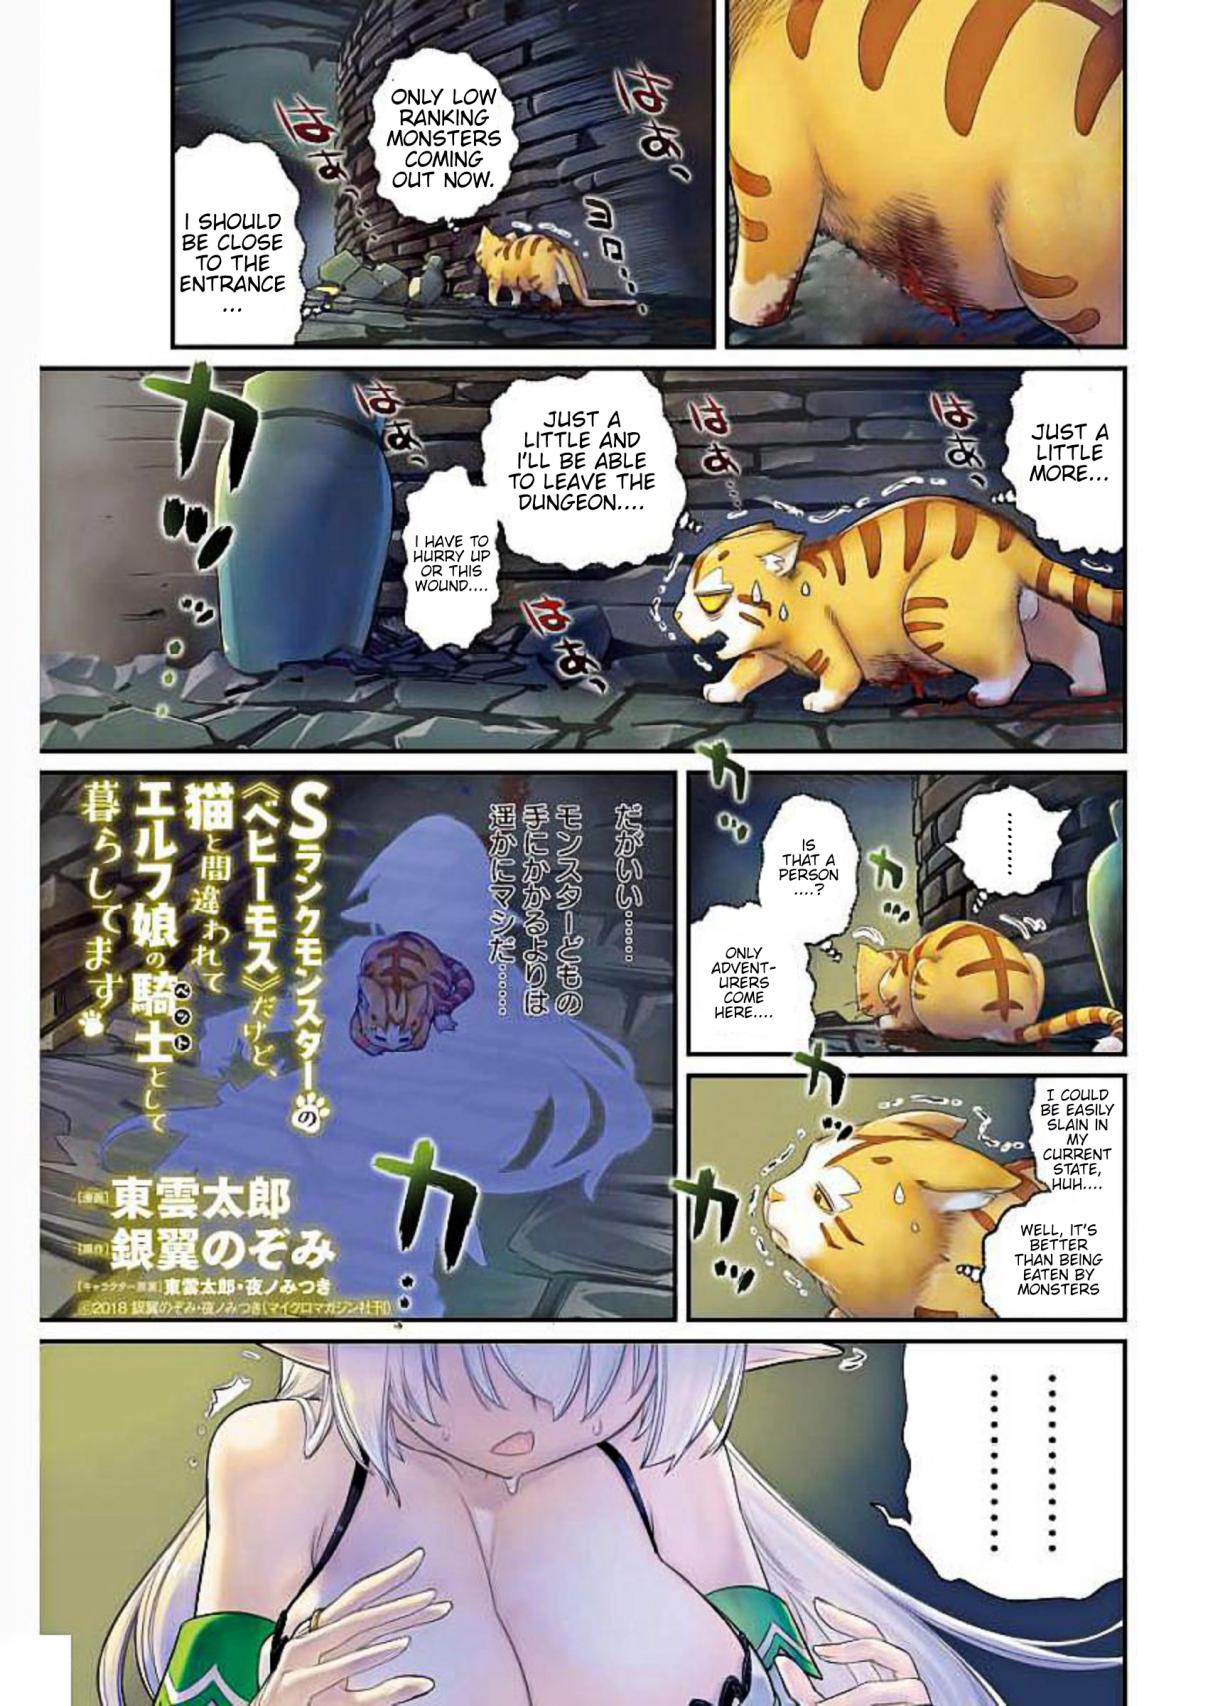 S Rank Monster no Behemoth Dakedo, Neko to Machigawarete Erufu Musume no Kishi (Pet) Toshite Kurashitemasu Vol. 1 Ch. 1 A Knight's vow